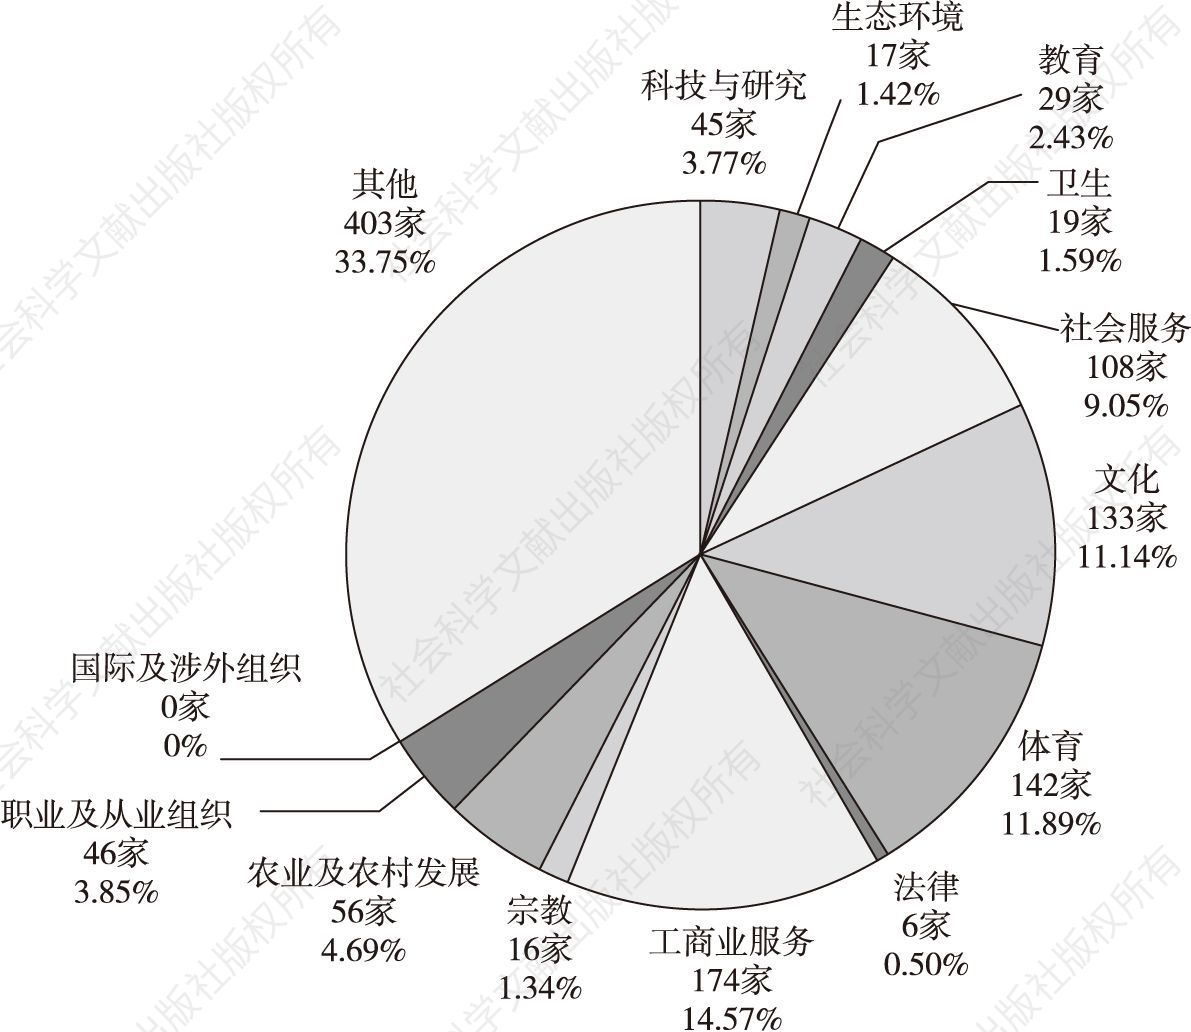 图3 2017年惠州市社会团体行业分布